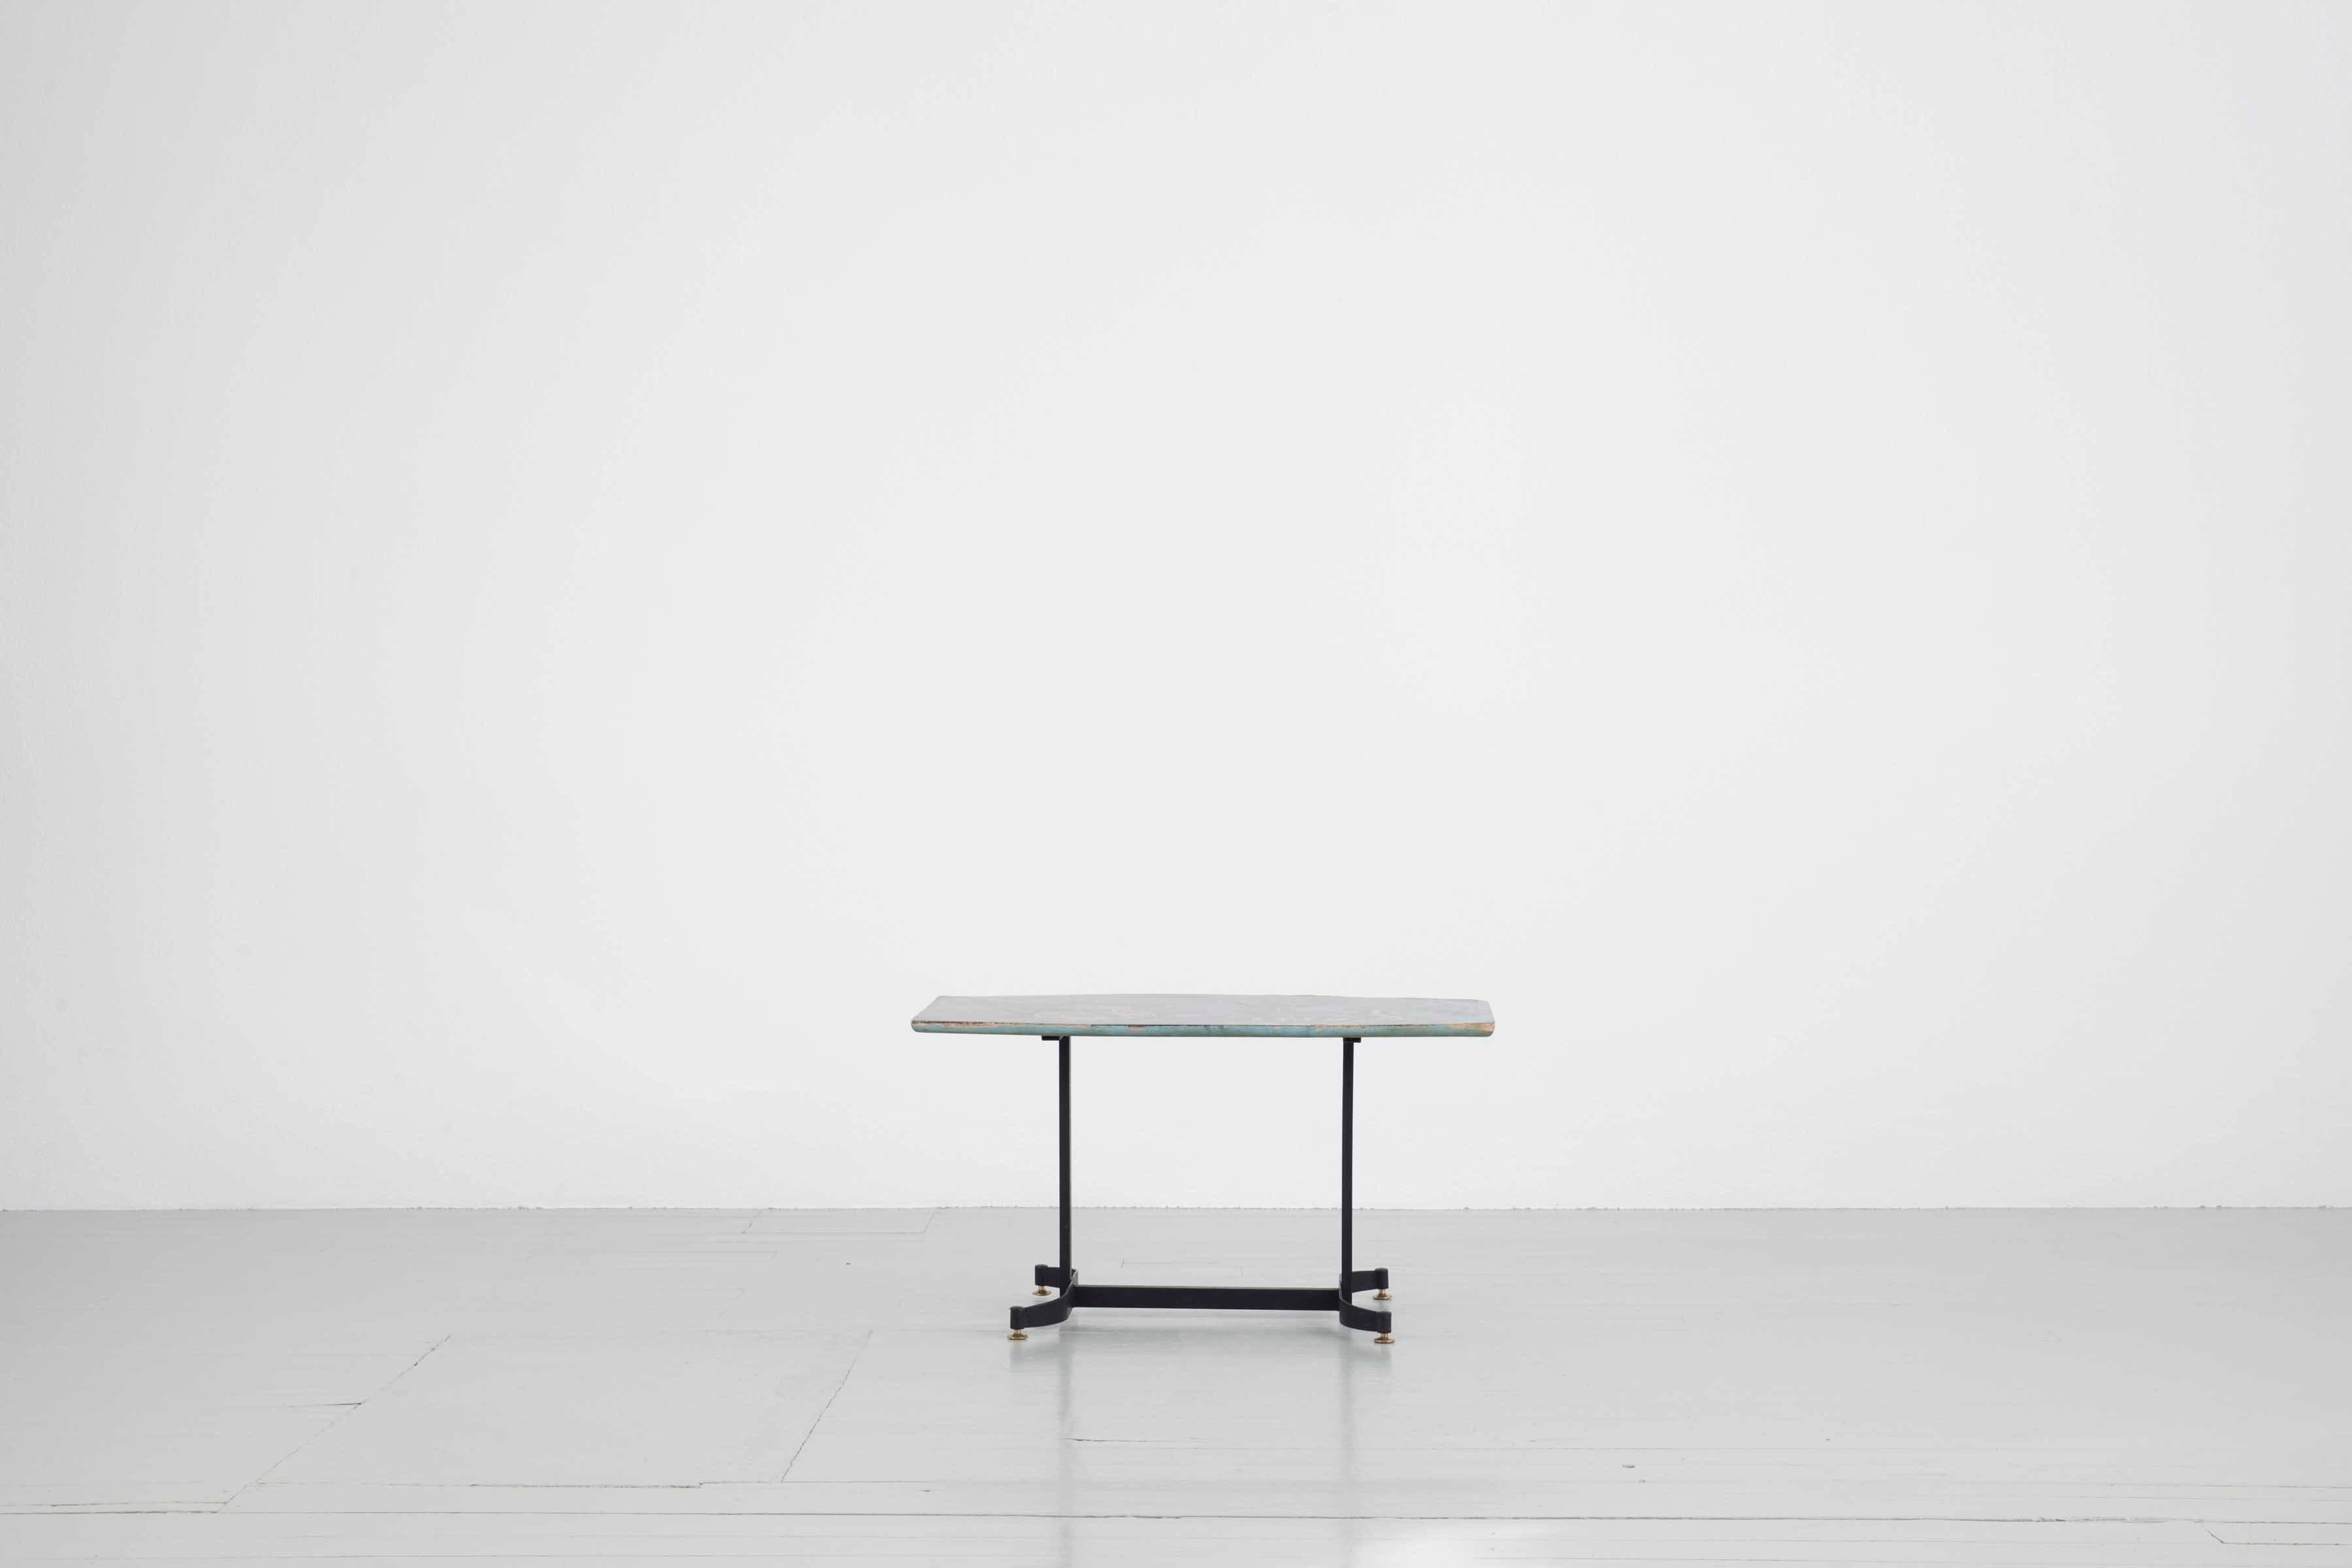 Dieser Sofatisch wurde in den 1950er Jahren entworfen. Das Tischgestell ist aus lackiertem Eisen und Messing, die eckige Tischplatte ist handbemalt. Für das Motiv, das an einigen Stellen (z. B. am Rand) nicht mehr vollständig vorhanden ist, wurden